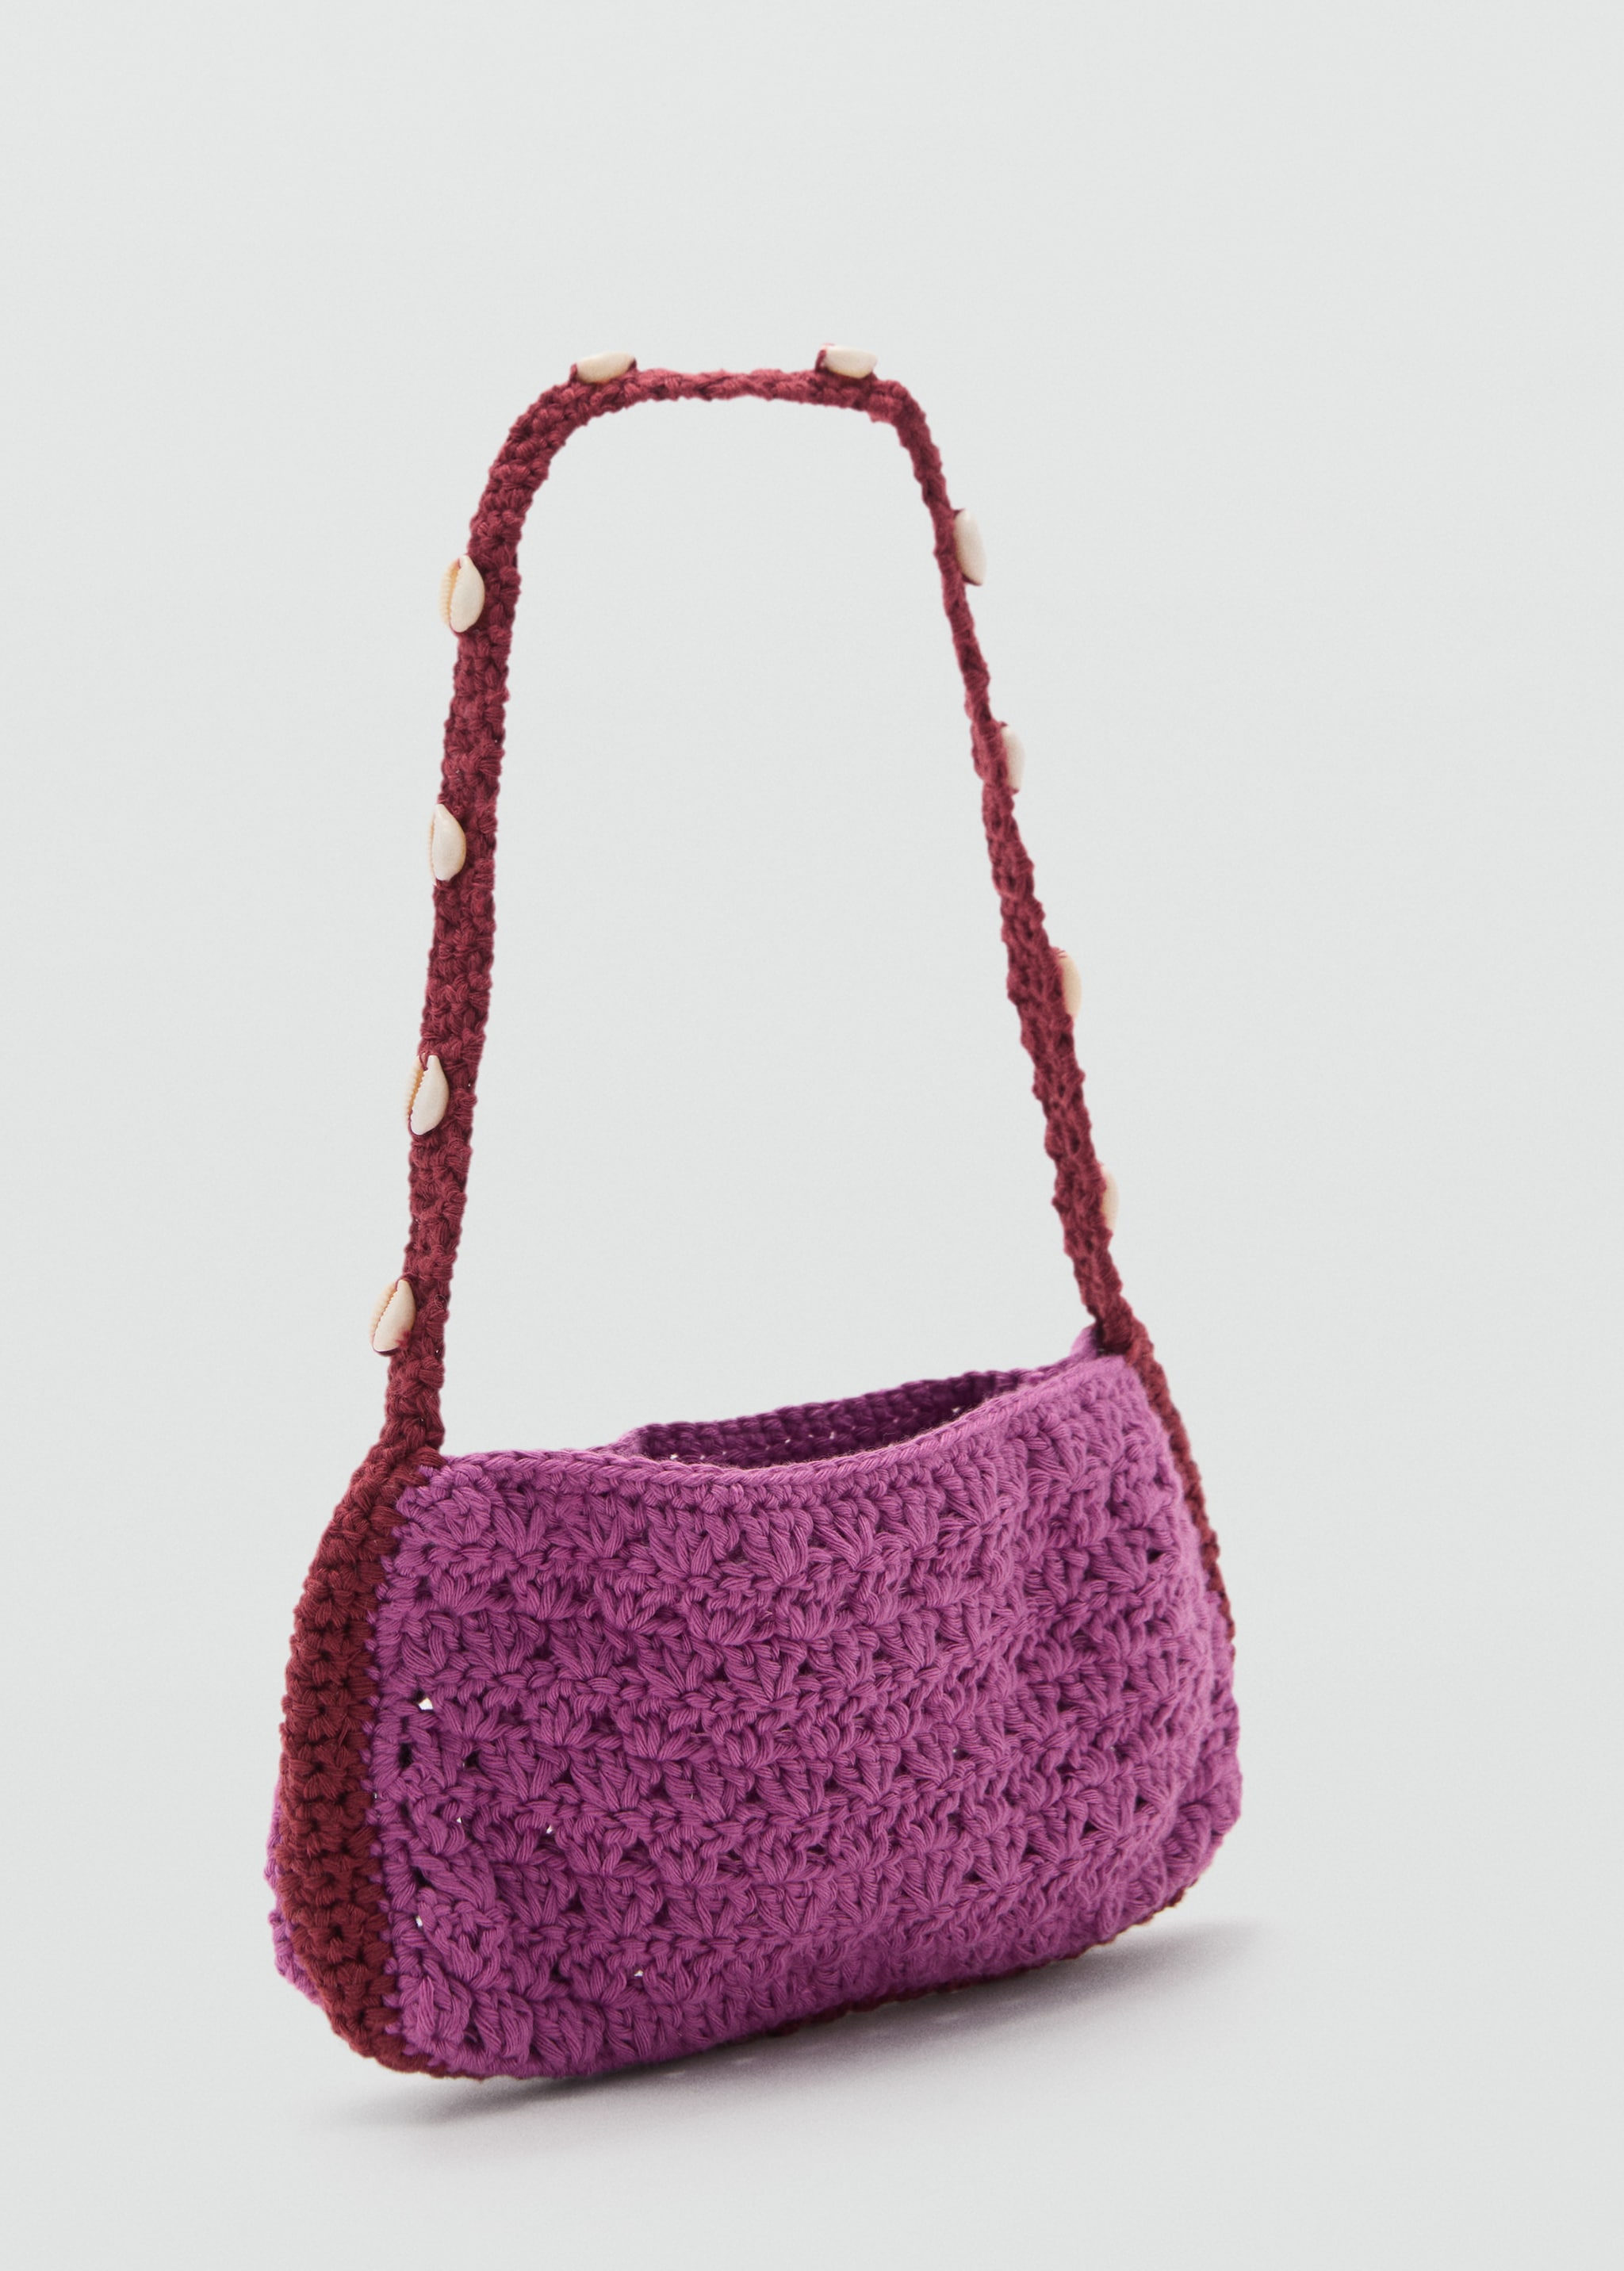 Crochet handbag - Medium plane